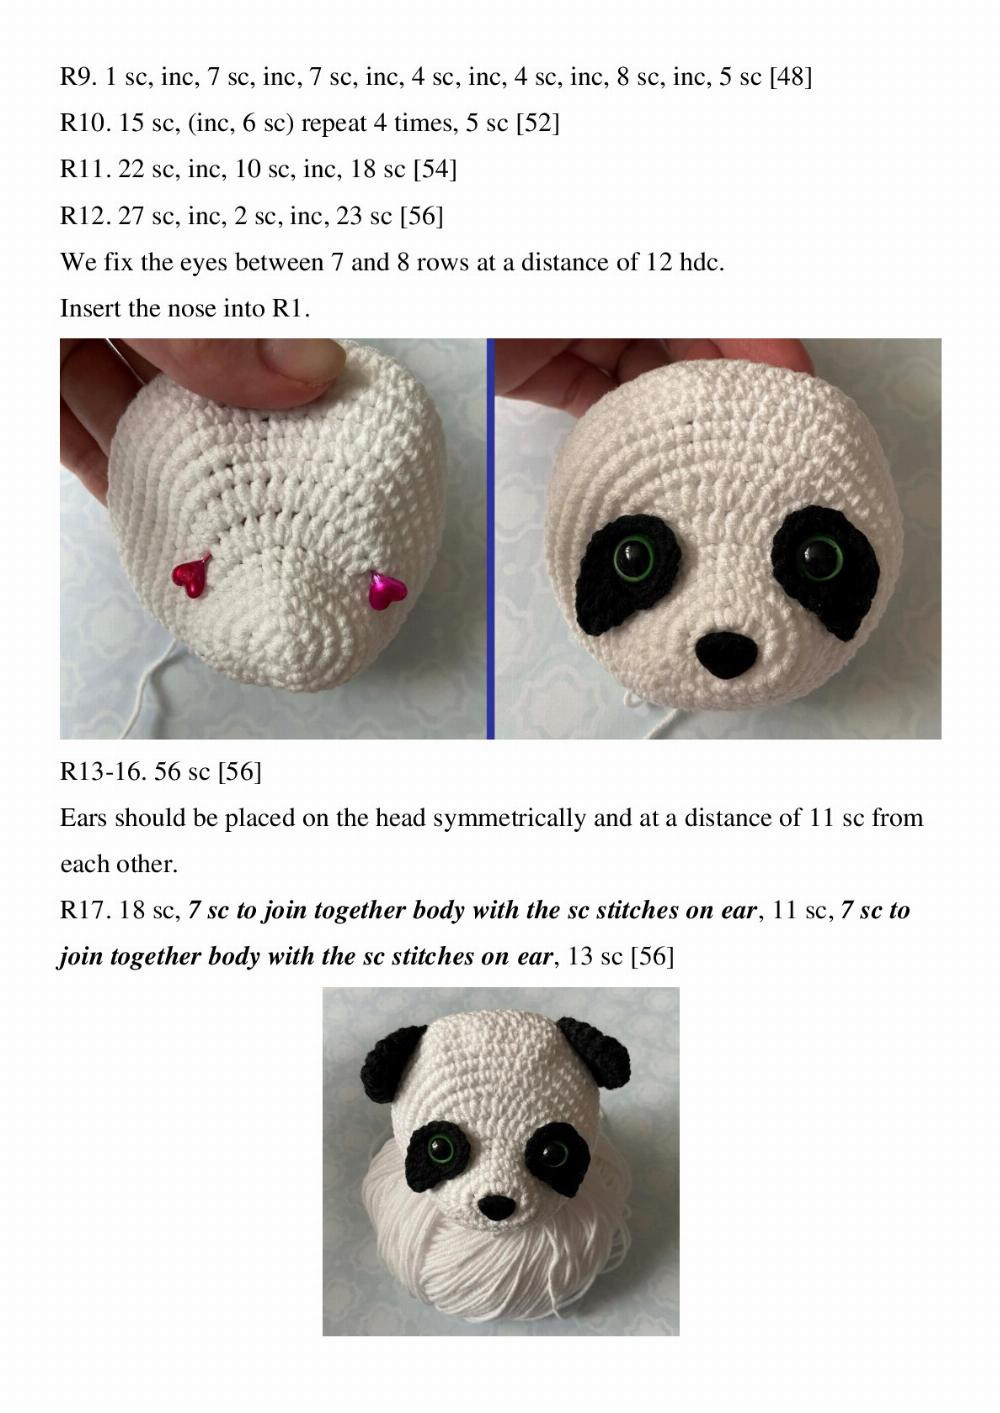 Panda Amigurumi. Crochet pattern